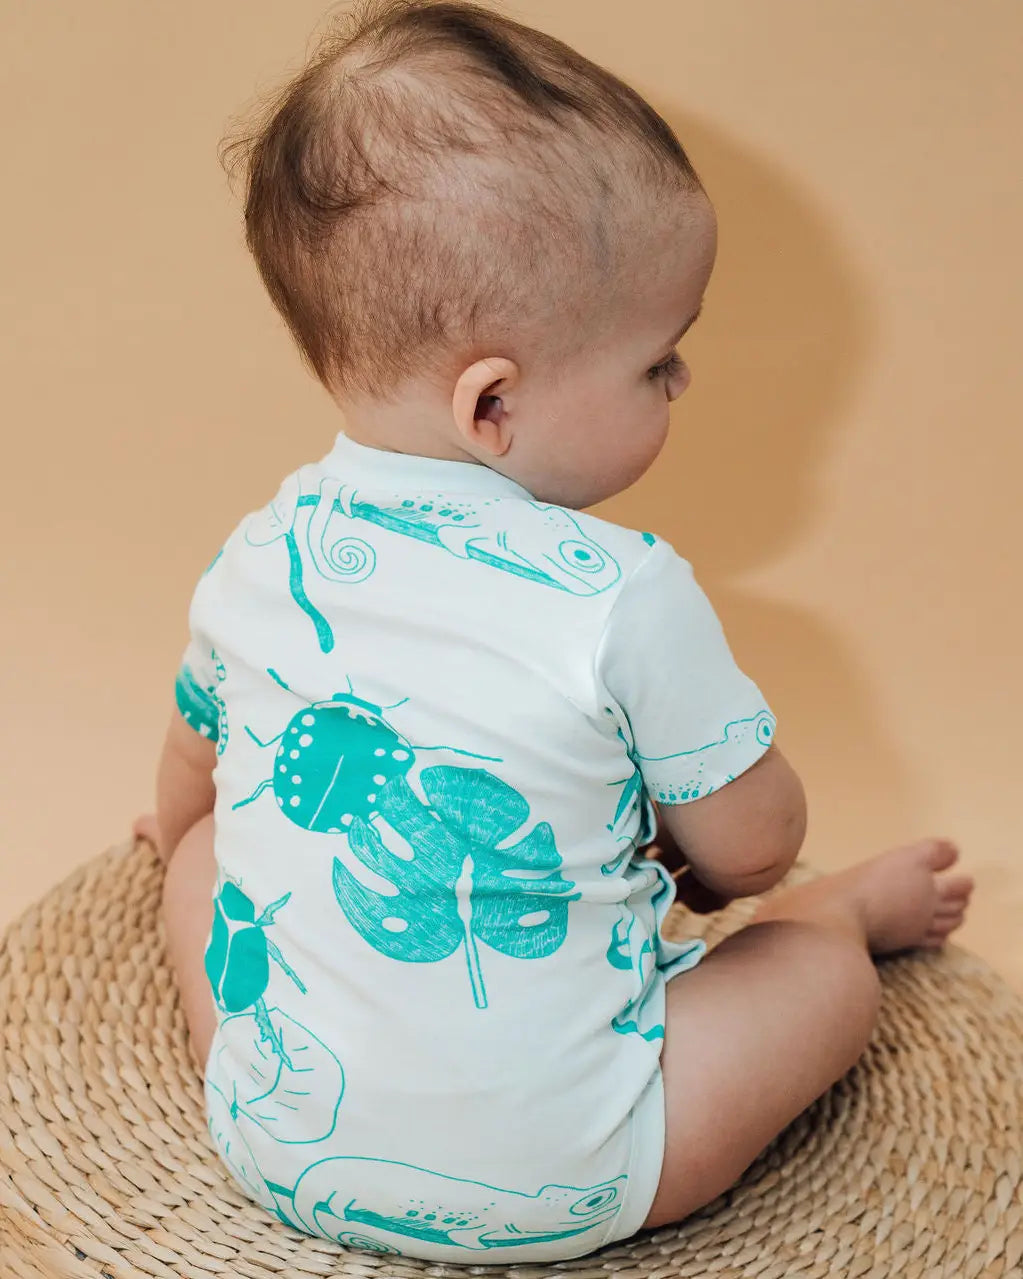 Baby wearing bug baby bodysuit